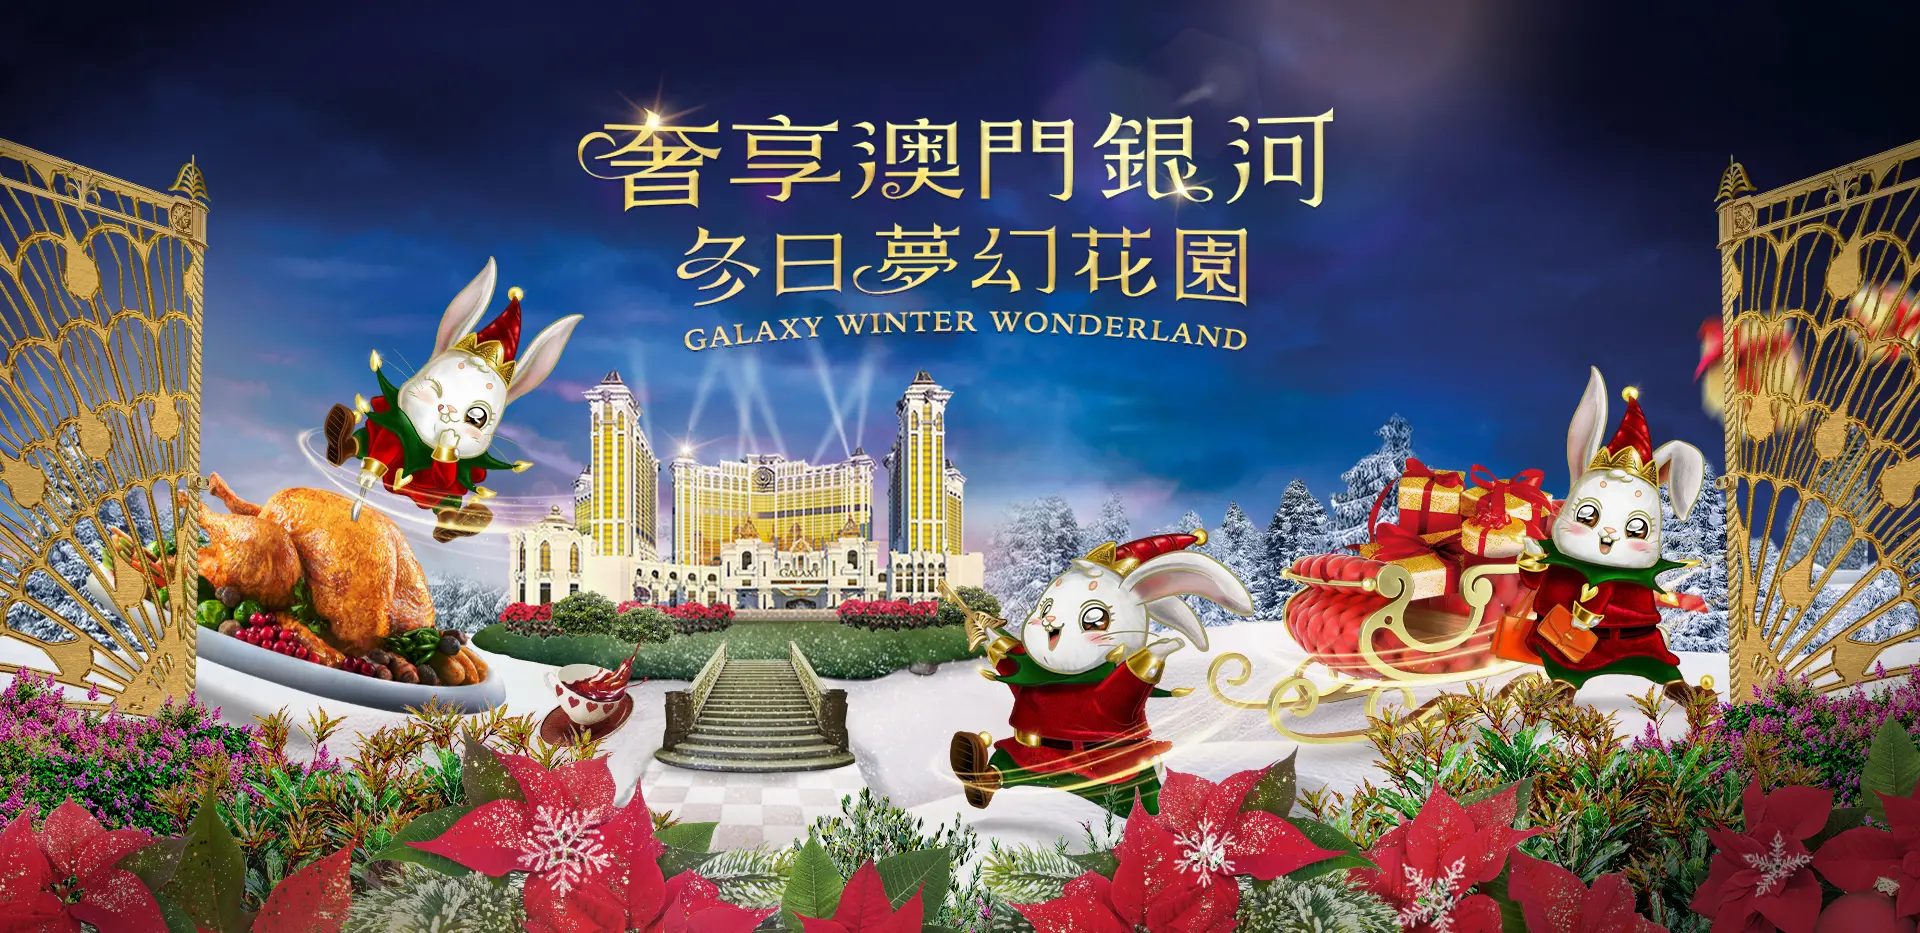 Galaxy Winter Wonderland | Galaxy Macau